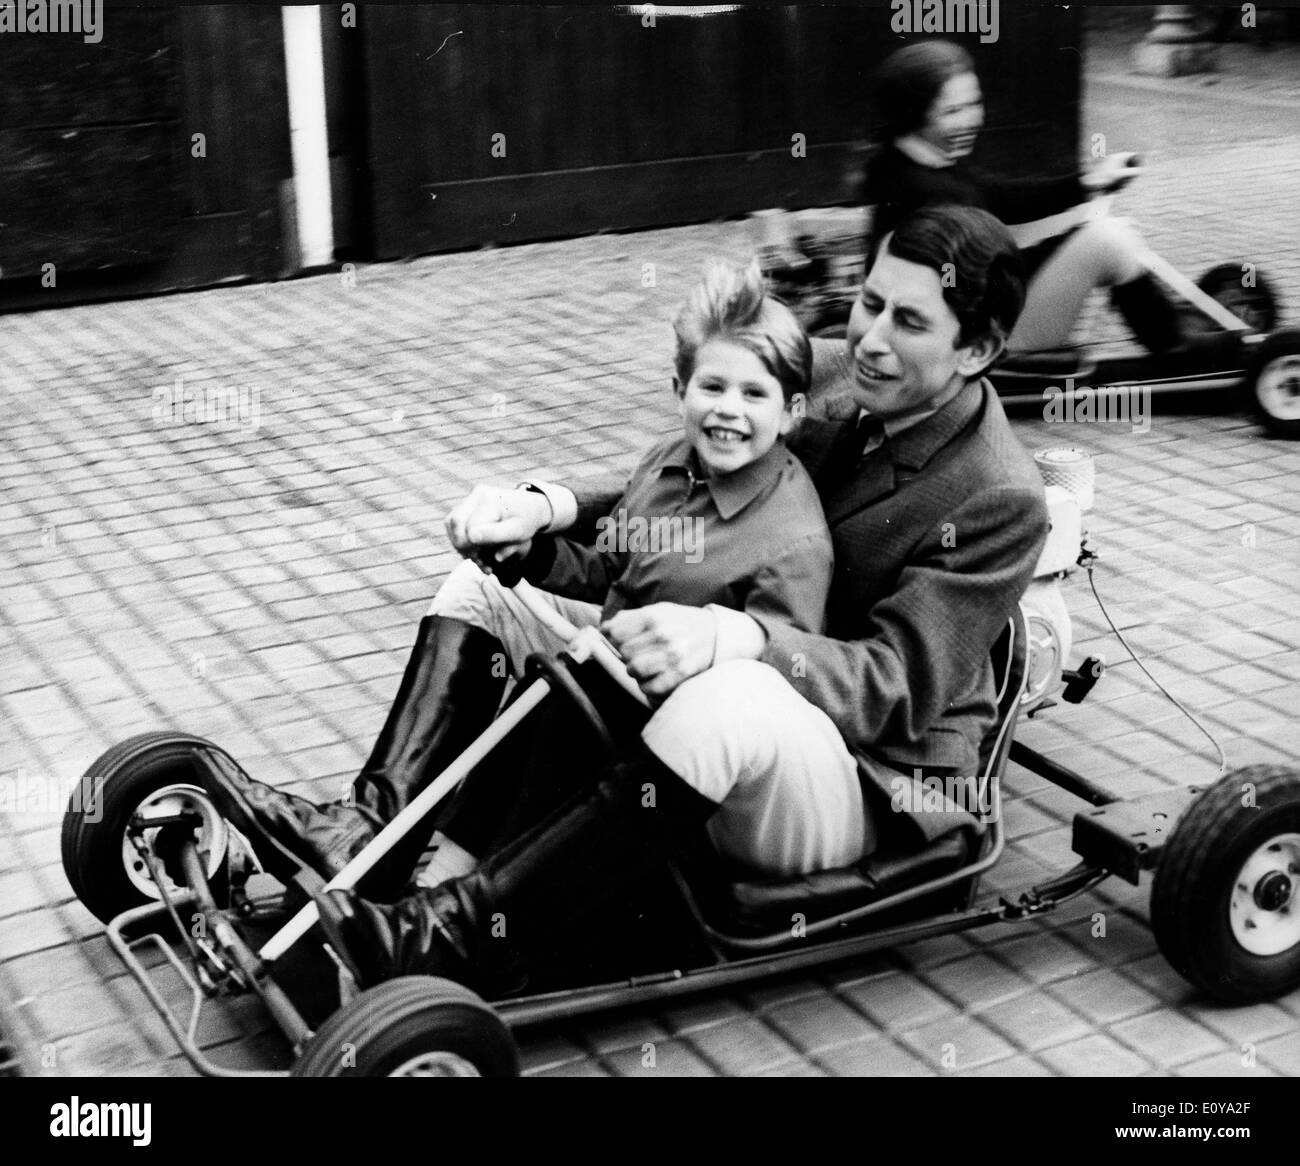 Prince Charles and Prince Edward go-kart Stock Photo